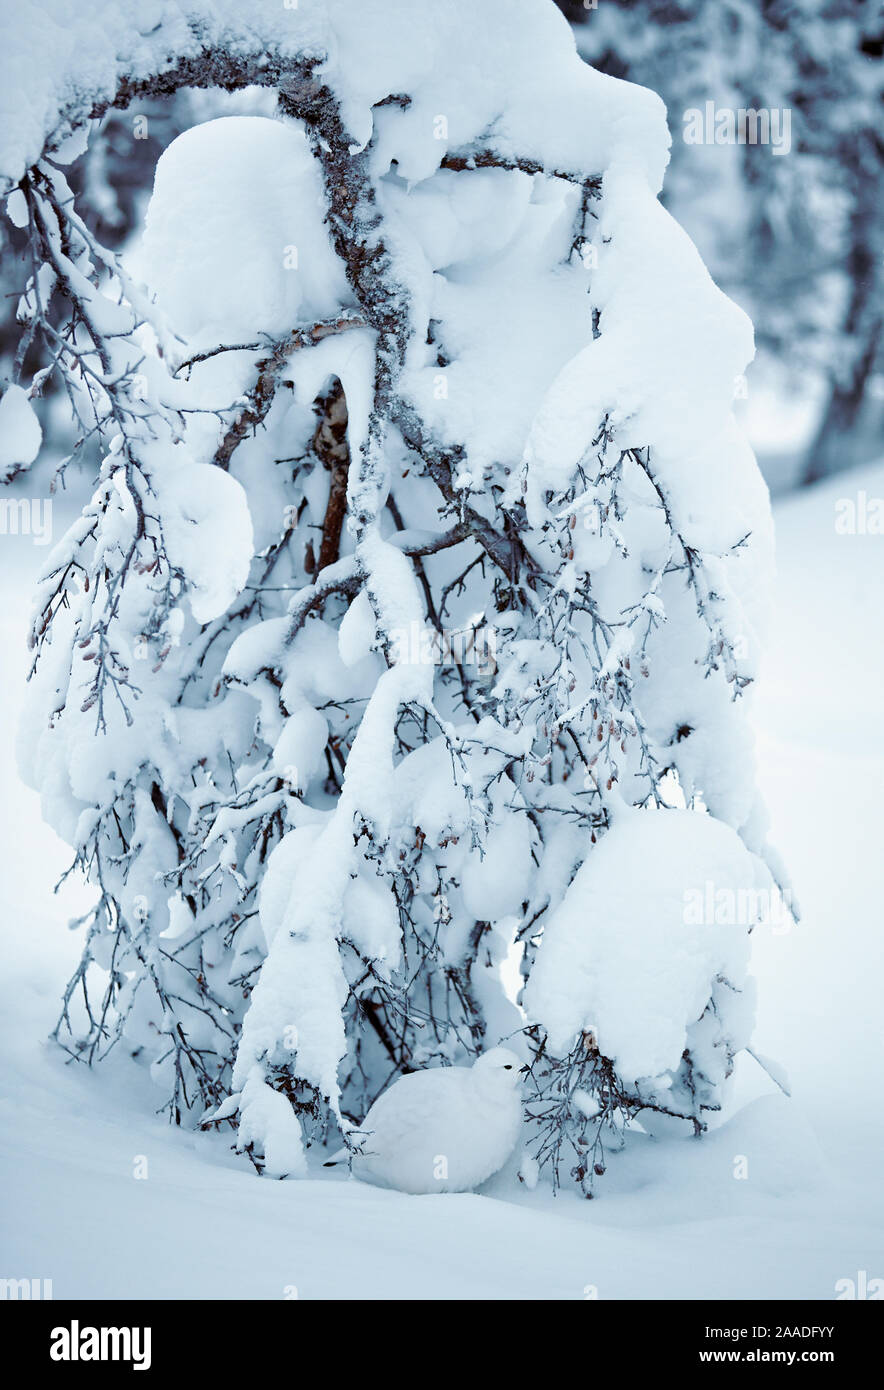 Willow grouse (Lagopus lagopus) sheltering under snow laden tree, Inari Kiilopa Finland January Stock Photo